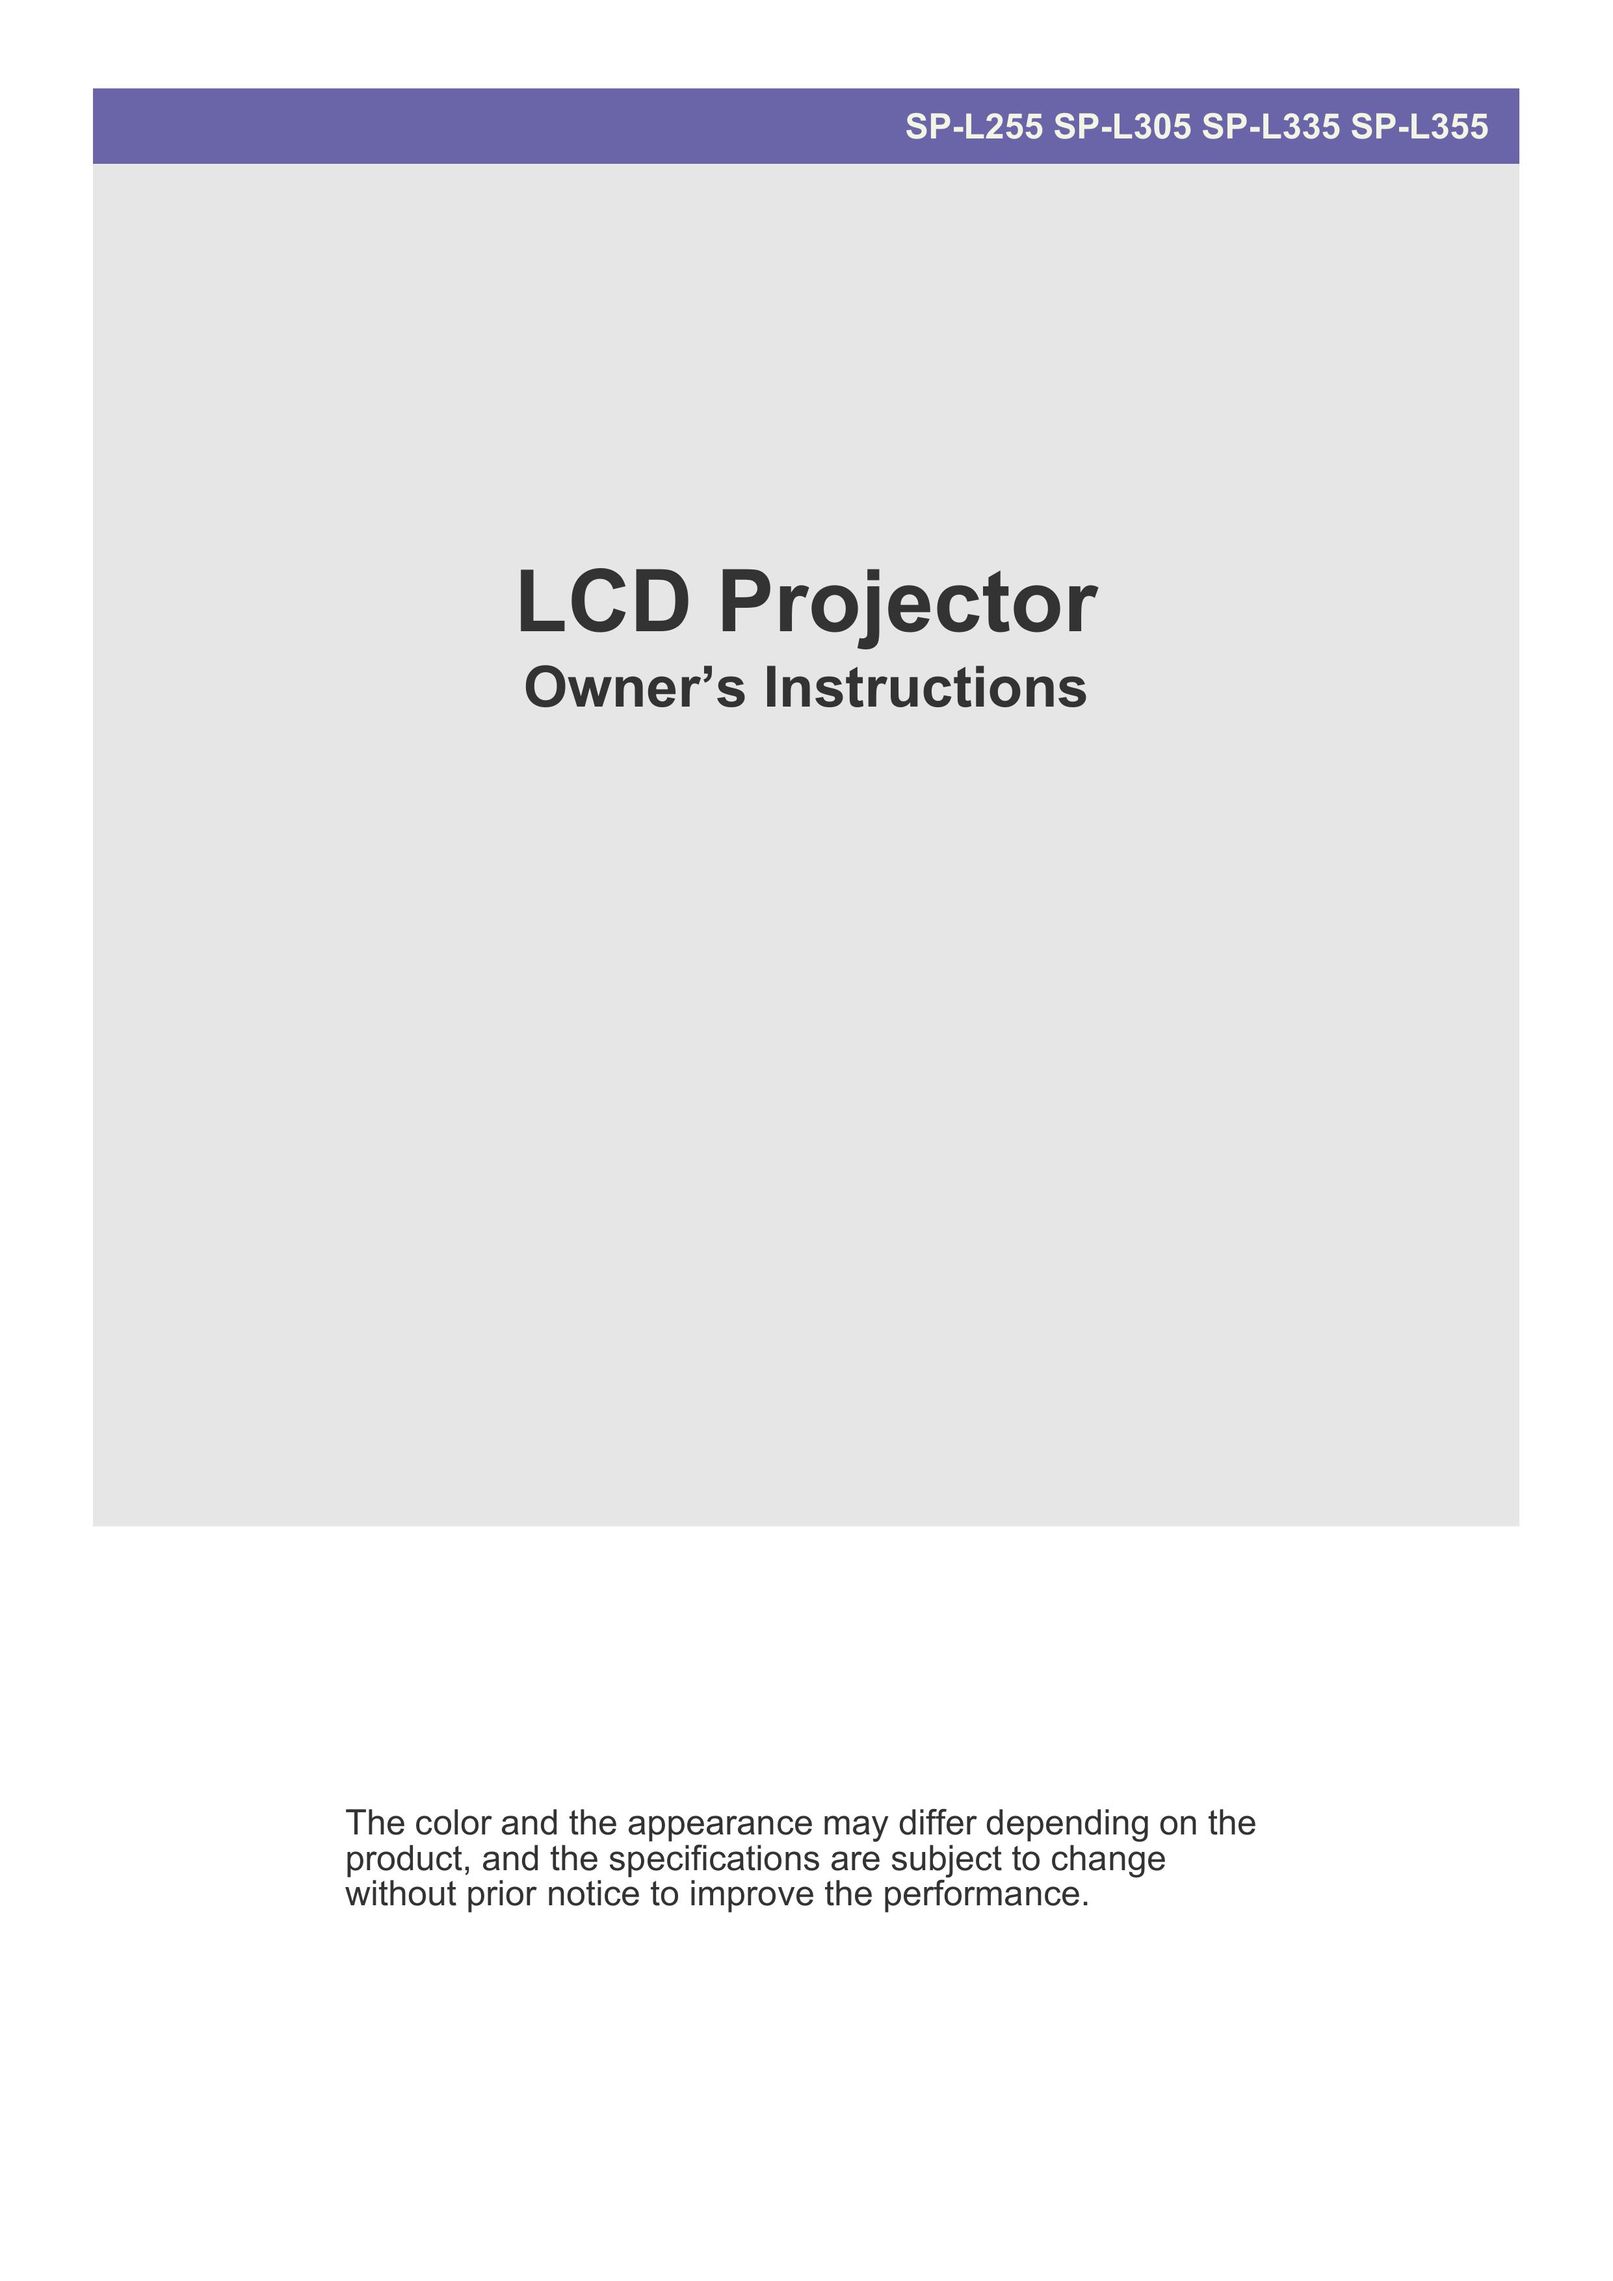 Samsung SP-L335 Projector User Manual